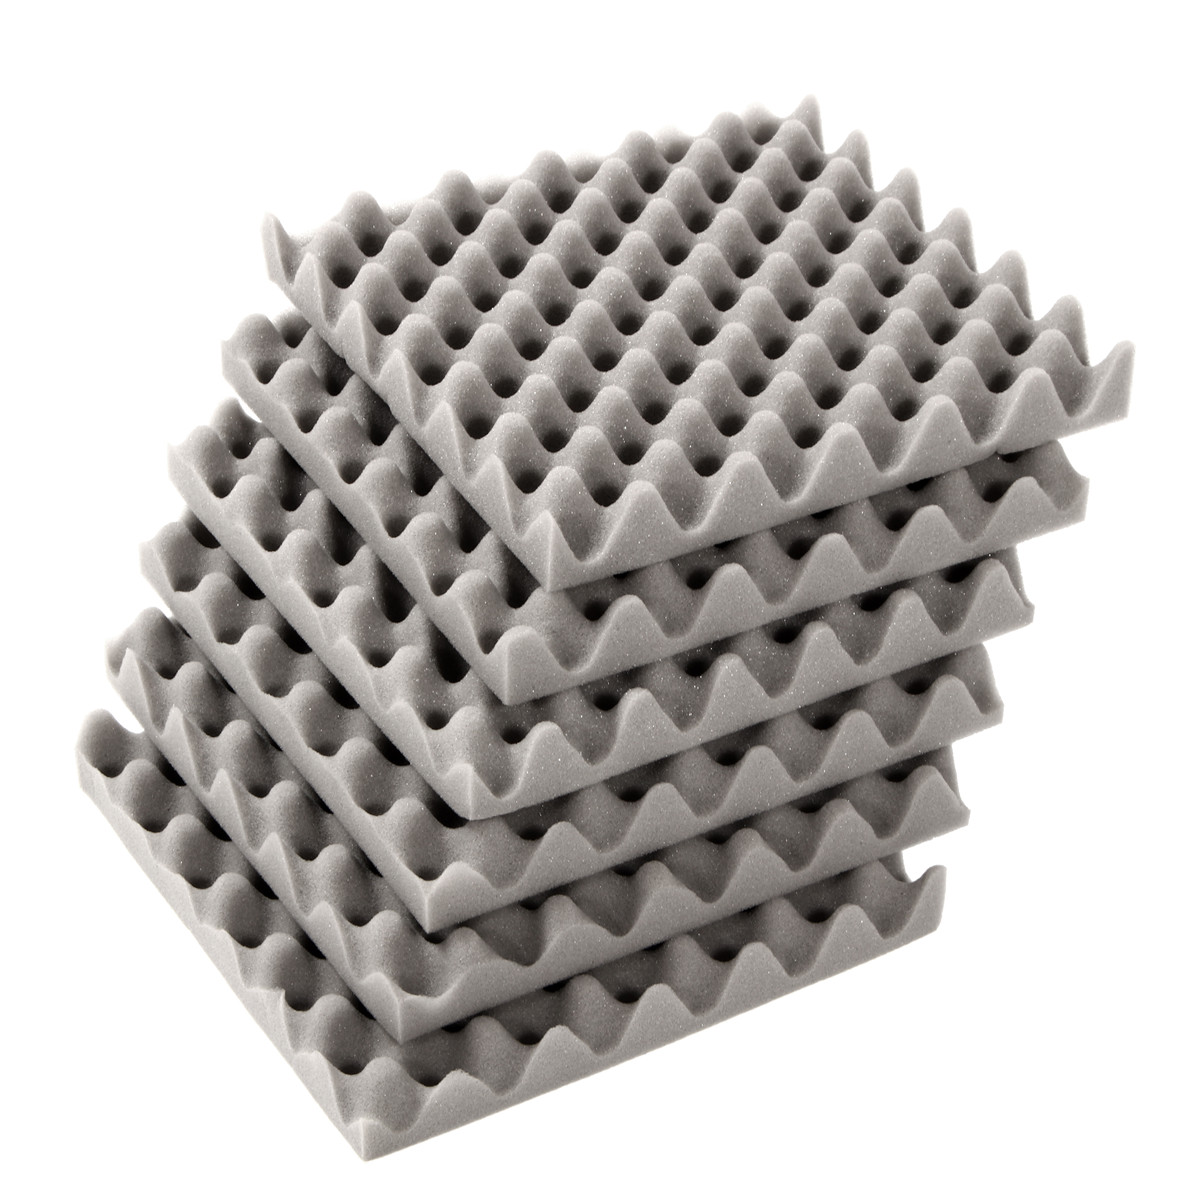 

6Pcs 30x30x4cm Acoustic Soundproofing Foam Tiles Convoluted Egg Studio Sound Insulation Cotton